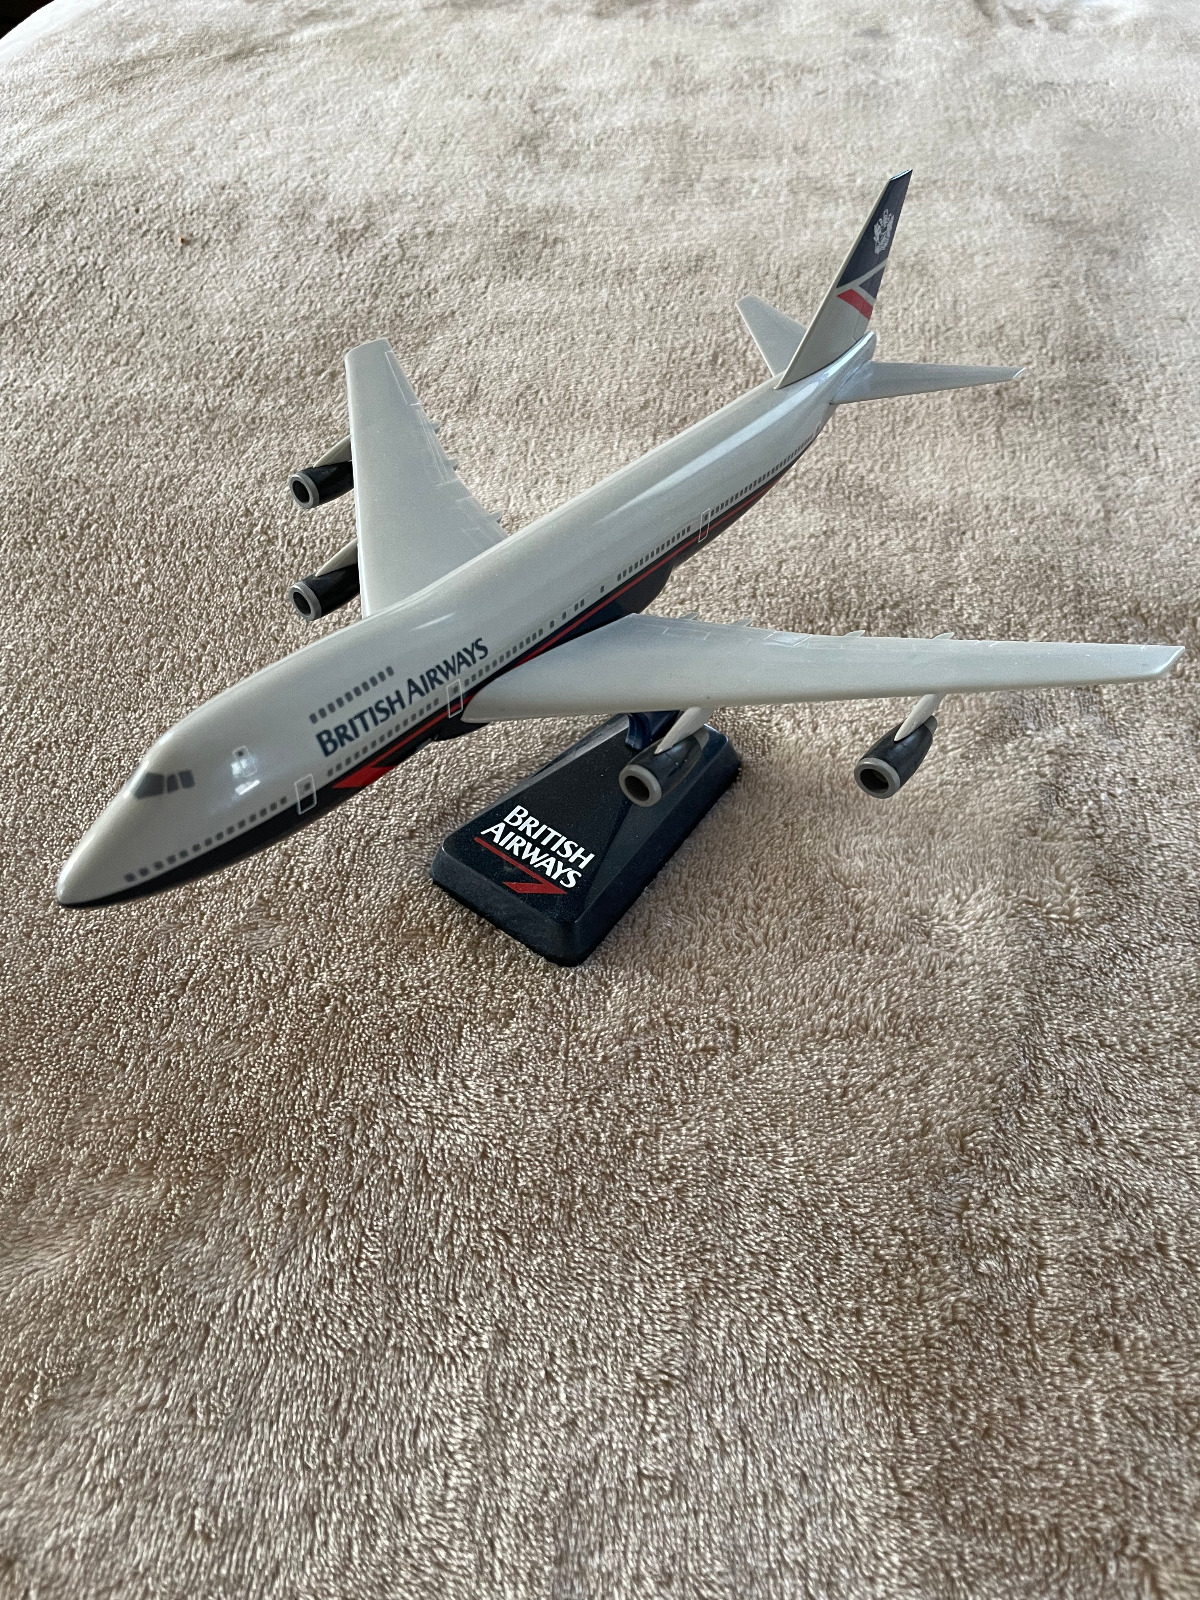 British Airways Boeing 747 snapfit model airplane